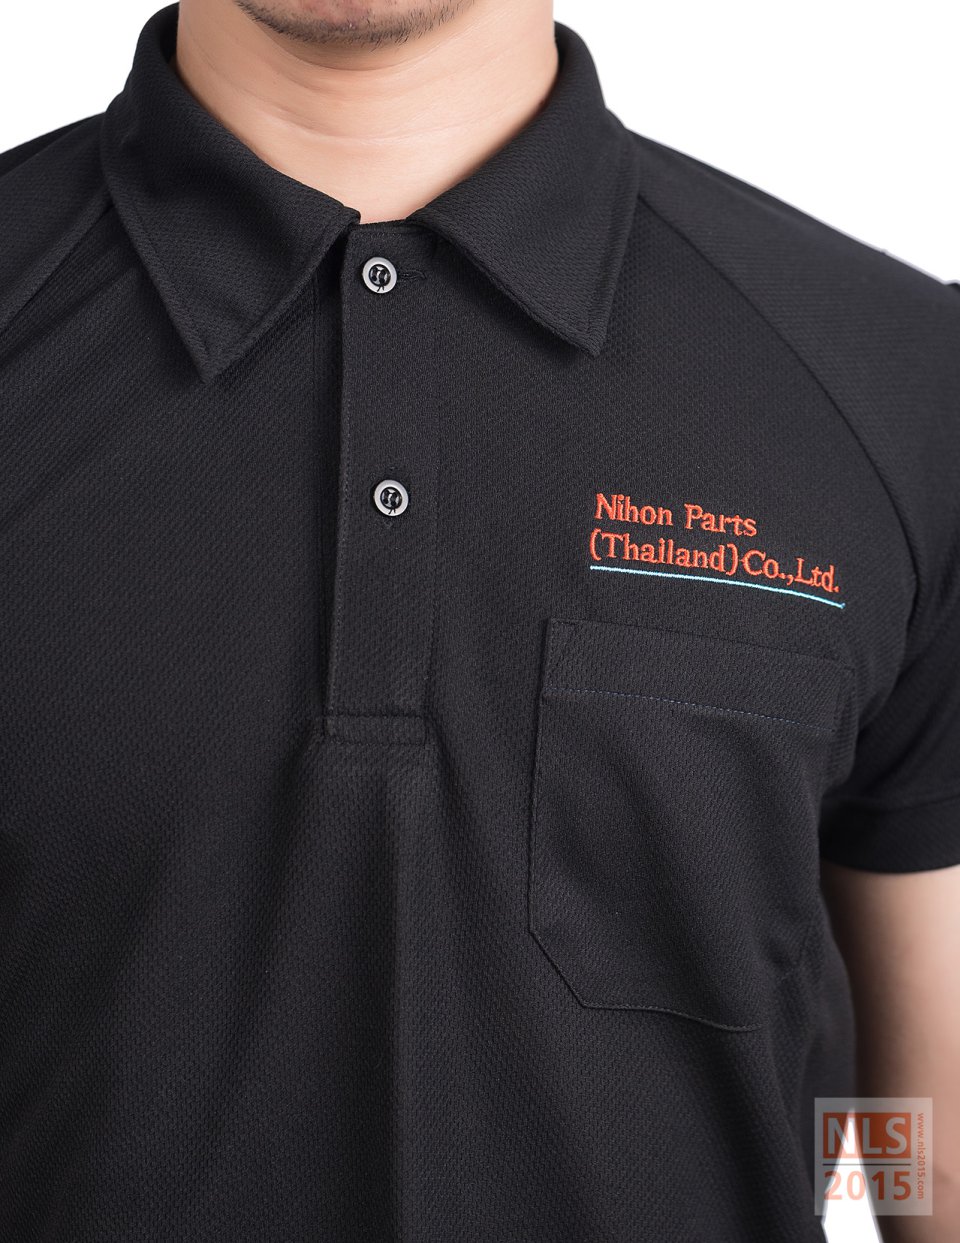 ตัวอย่างเสื้อโปโลพนักงานชายบริษัท Nihon Parts (Thailand) Co.,Ltd. / นลินสิริ รับผลิตเสื้อโปโลพร้อมปักโลโก้รูปที่ 